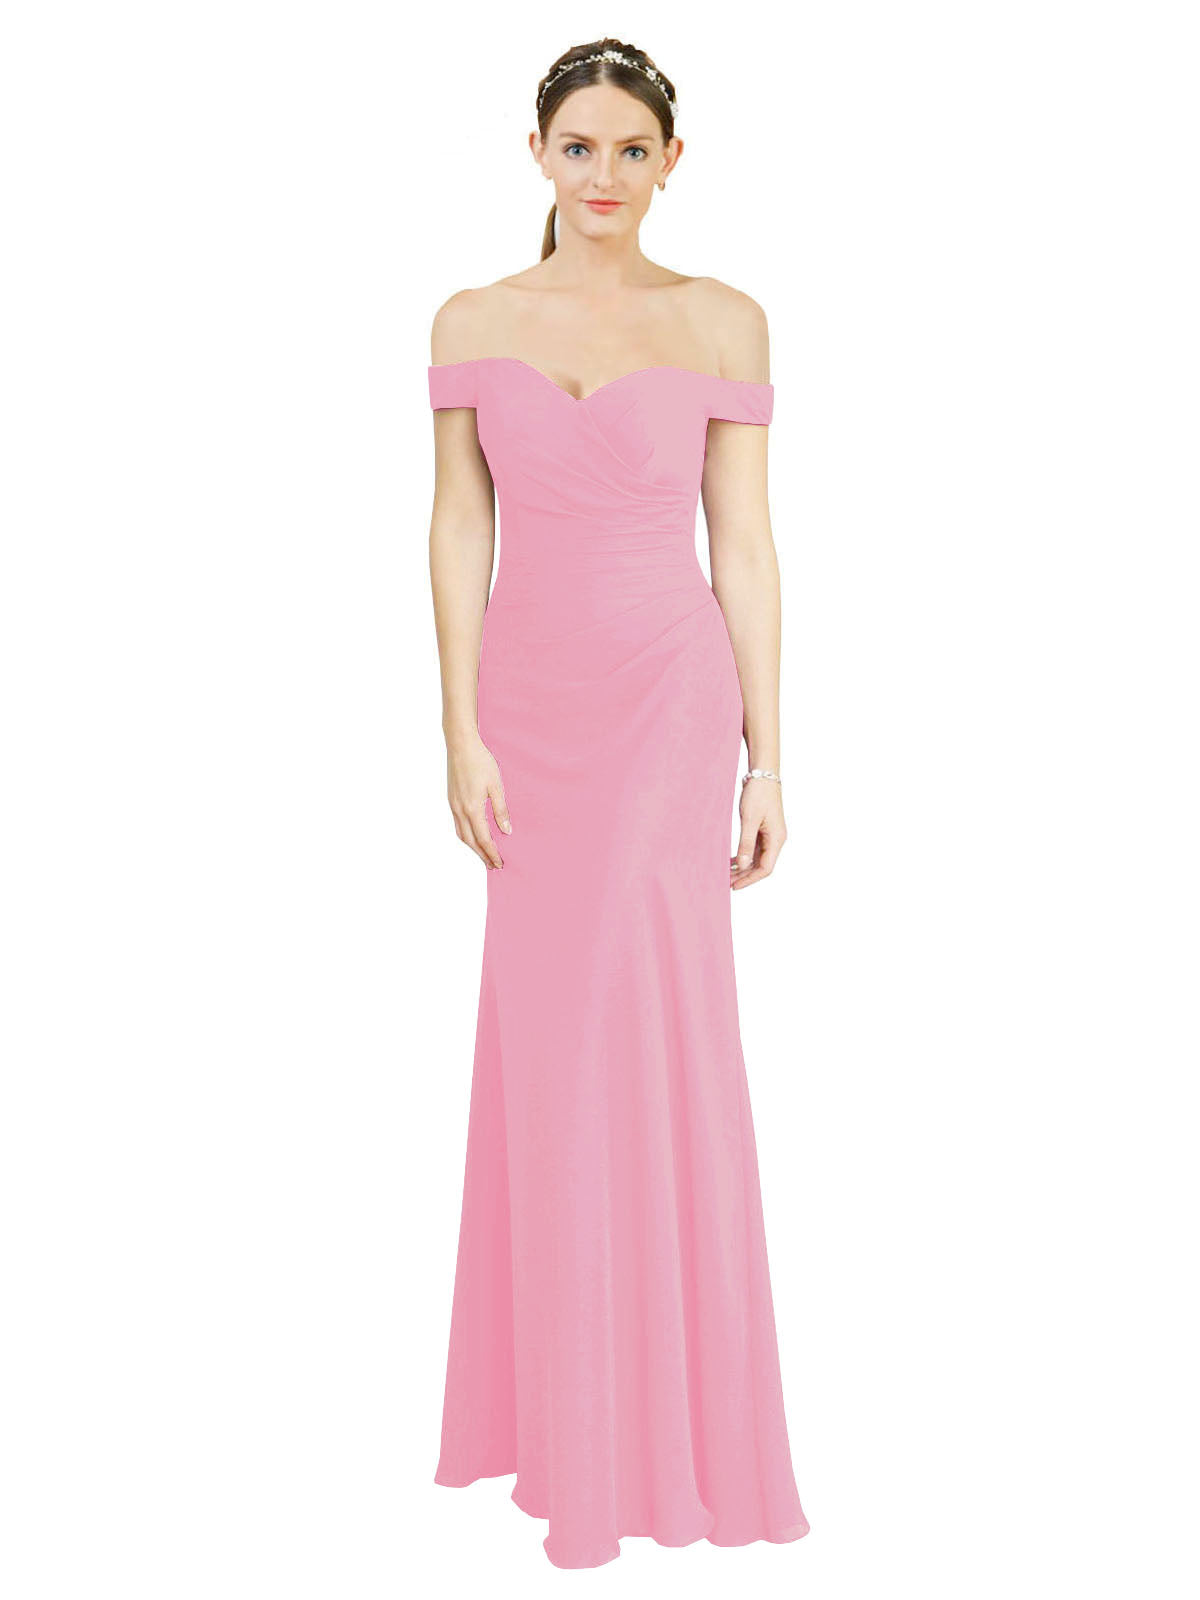 Hot Pink Mermaid Off the Shoulder Sleeveless Long Bridesmaid Dress Carolyn